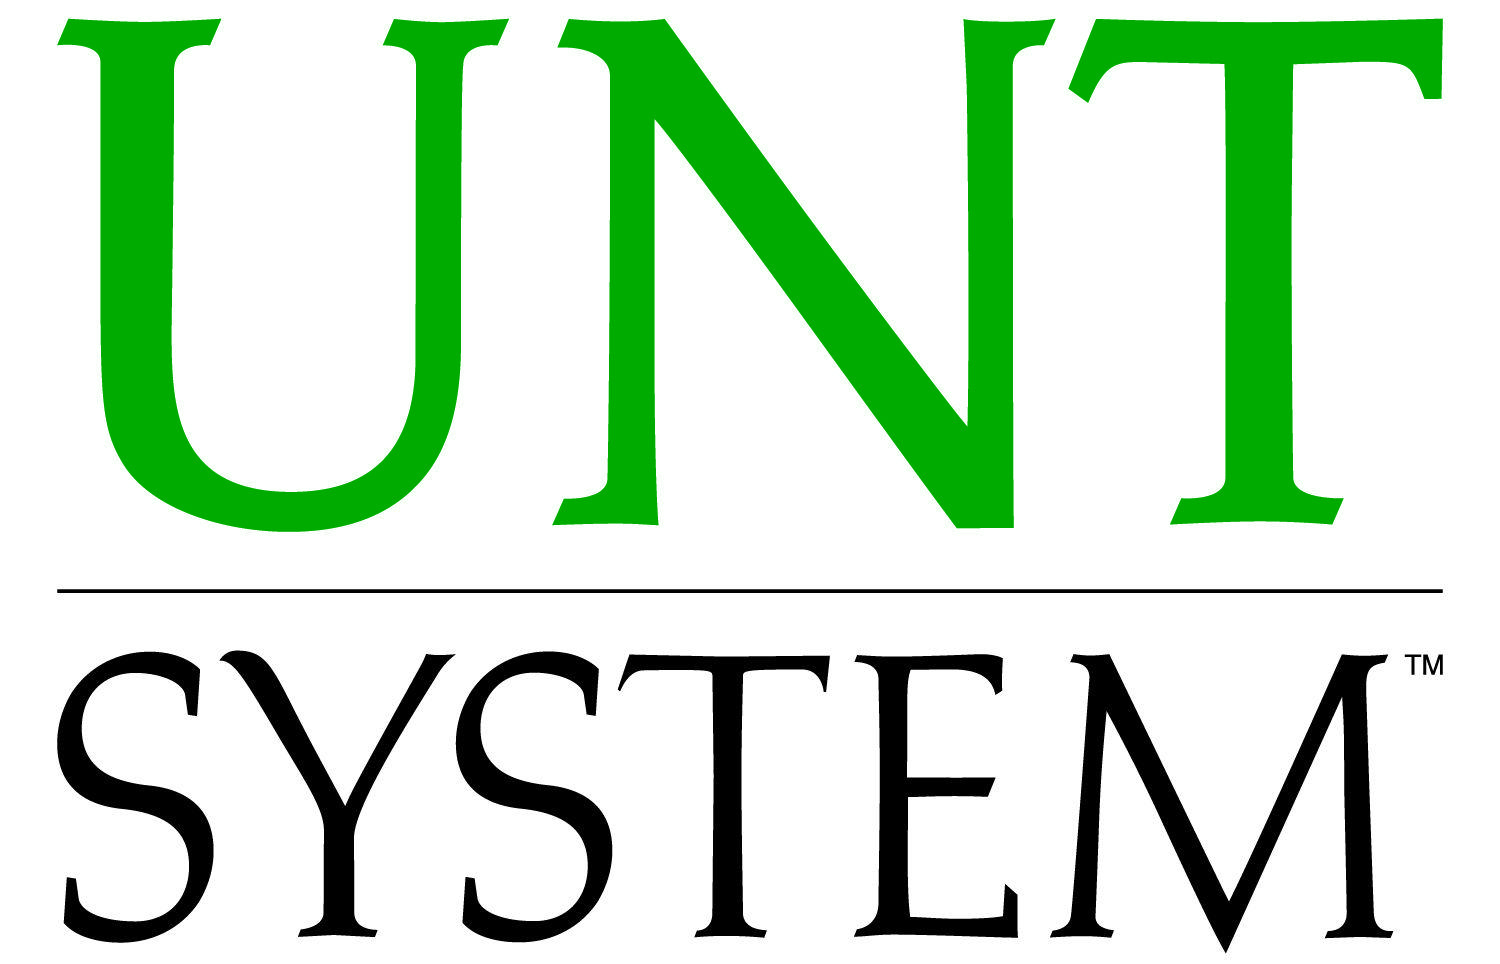 UNT Logo - Wordmark / Logo Usage